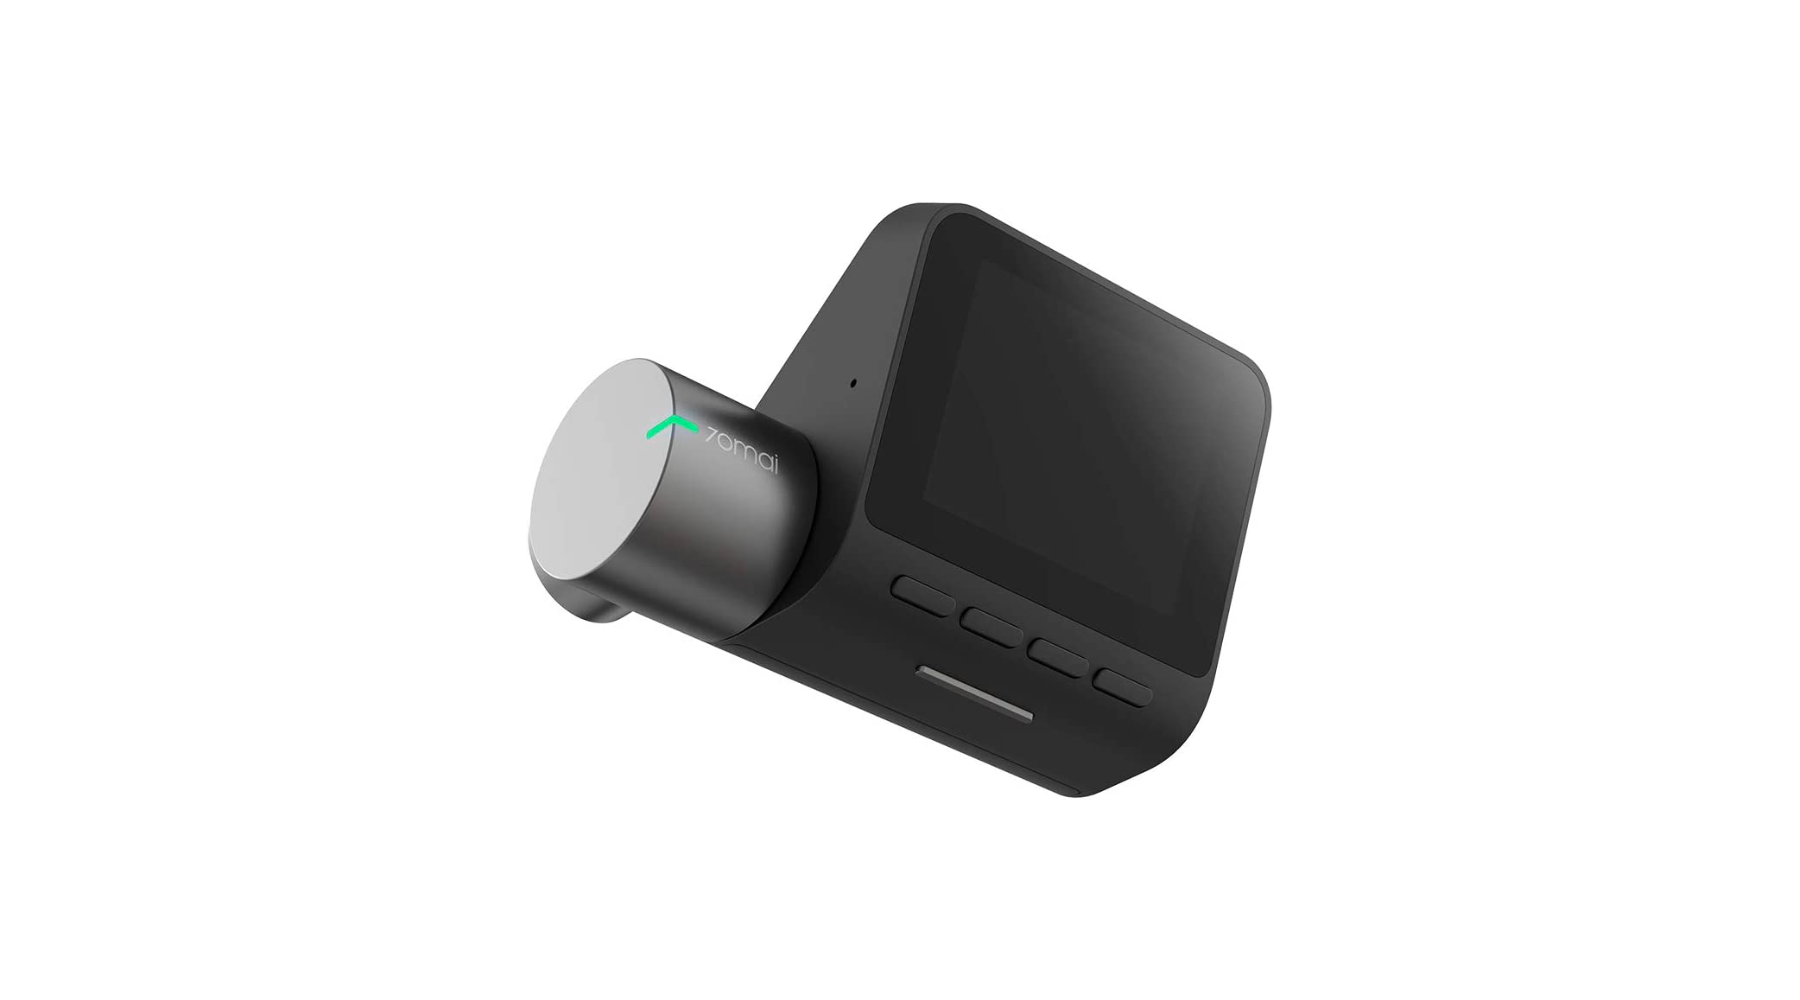 Caméra embarquée 4K Wifi pour voiture Mémoire Non-inclus